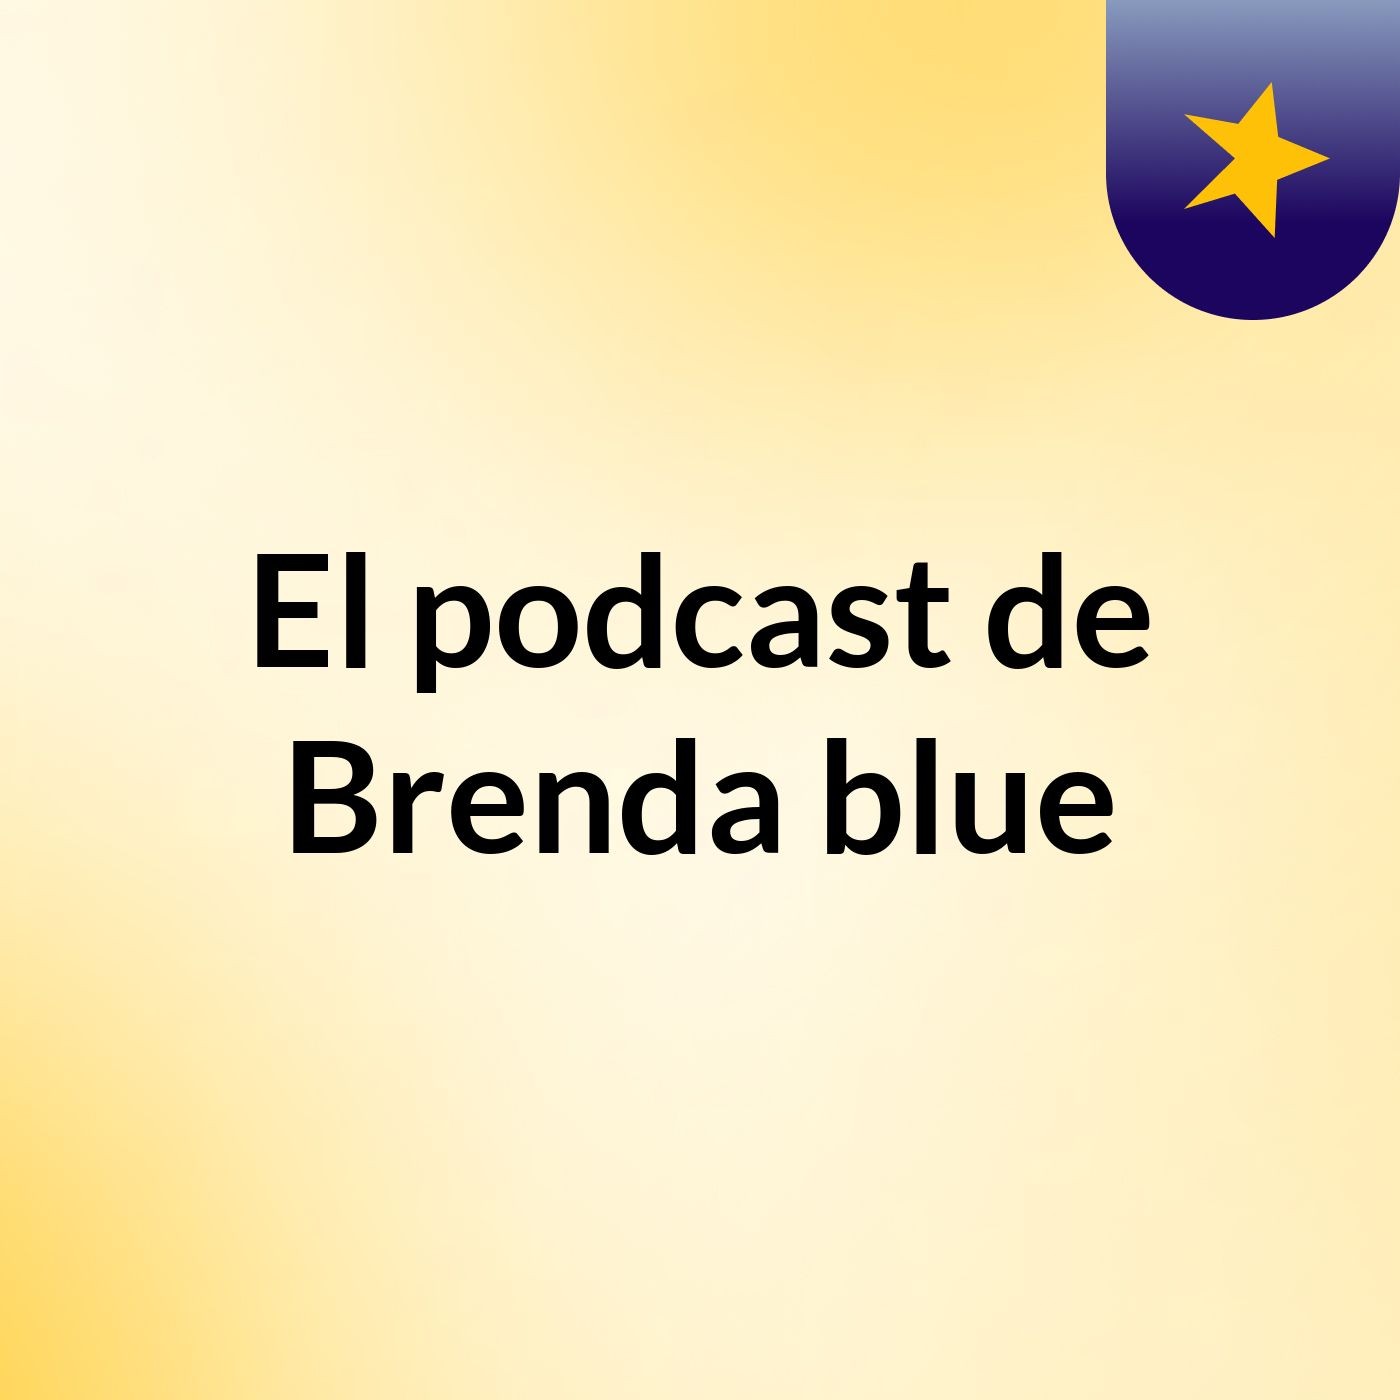 El podcast de Brenda blue